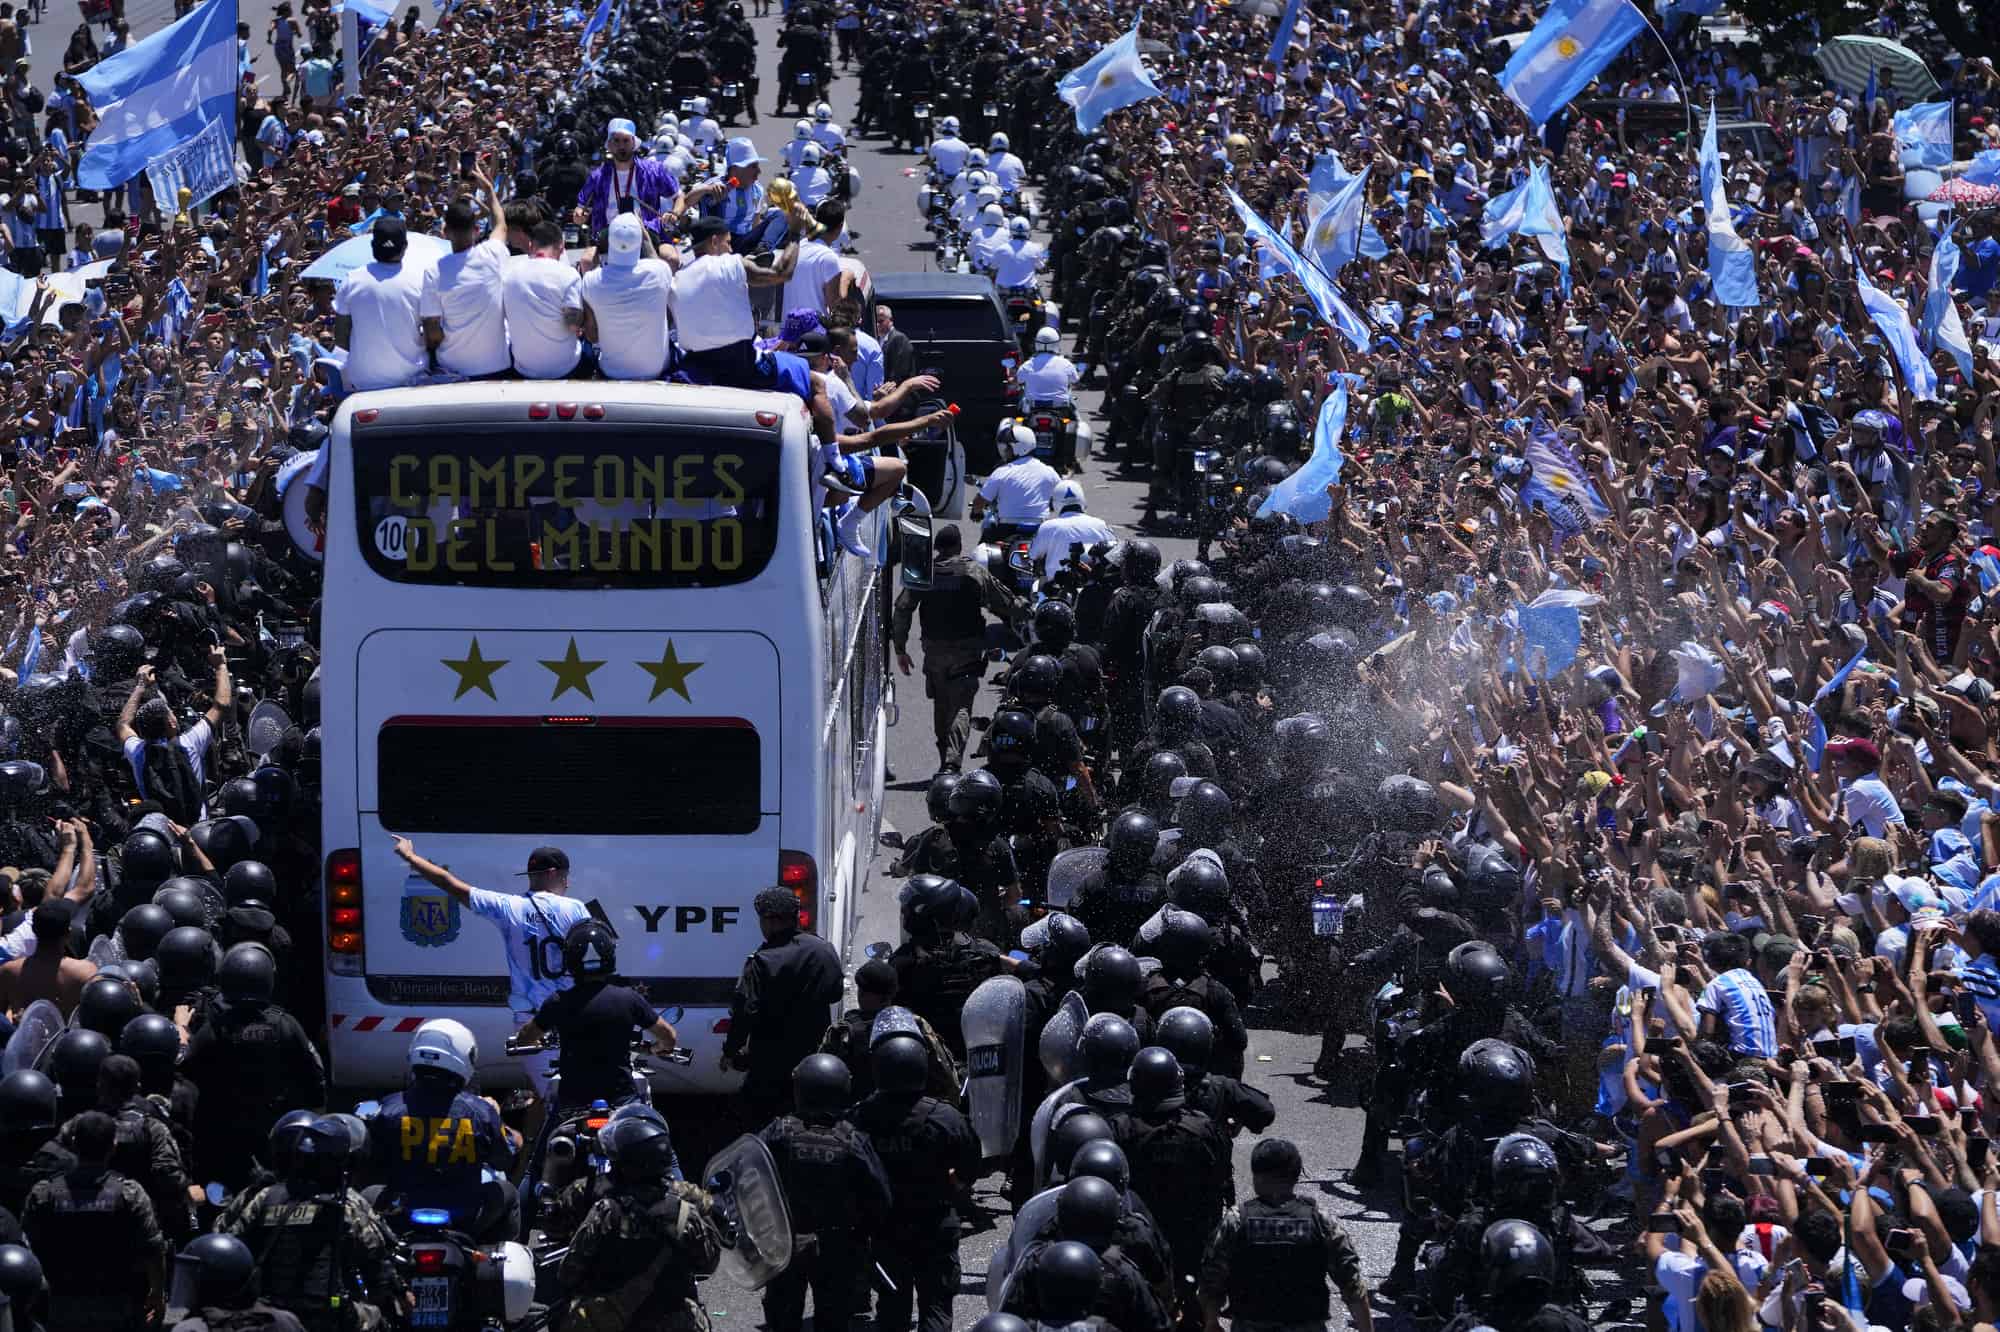 La selección argentina de fútbol muestra su trofeo de la Copa del Mundo desde un autobús cuando son recibidos en Buenos Aires, Argentina, el martes 2 de diciembre de 2019. 20 de febrero de 2022. En la ventana del autobús se lee en español World Champions.